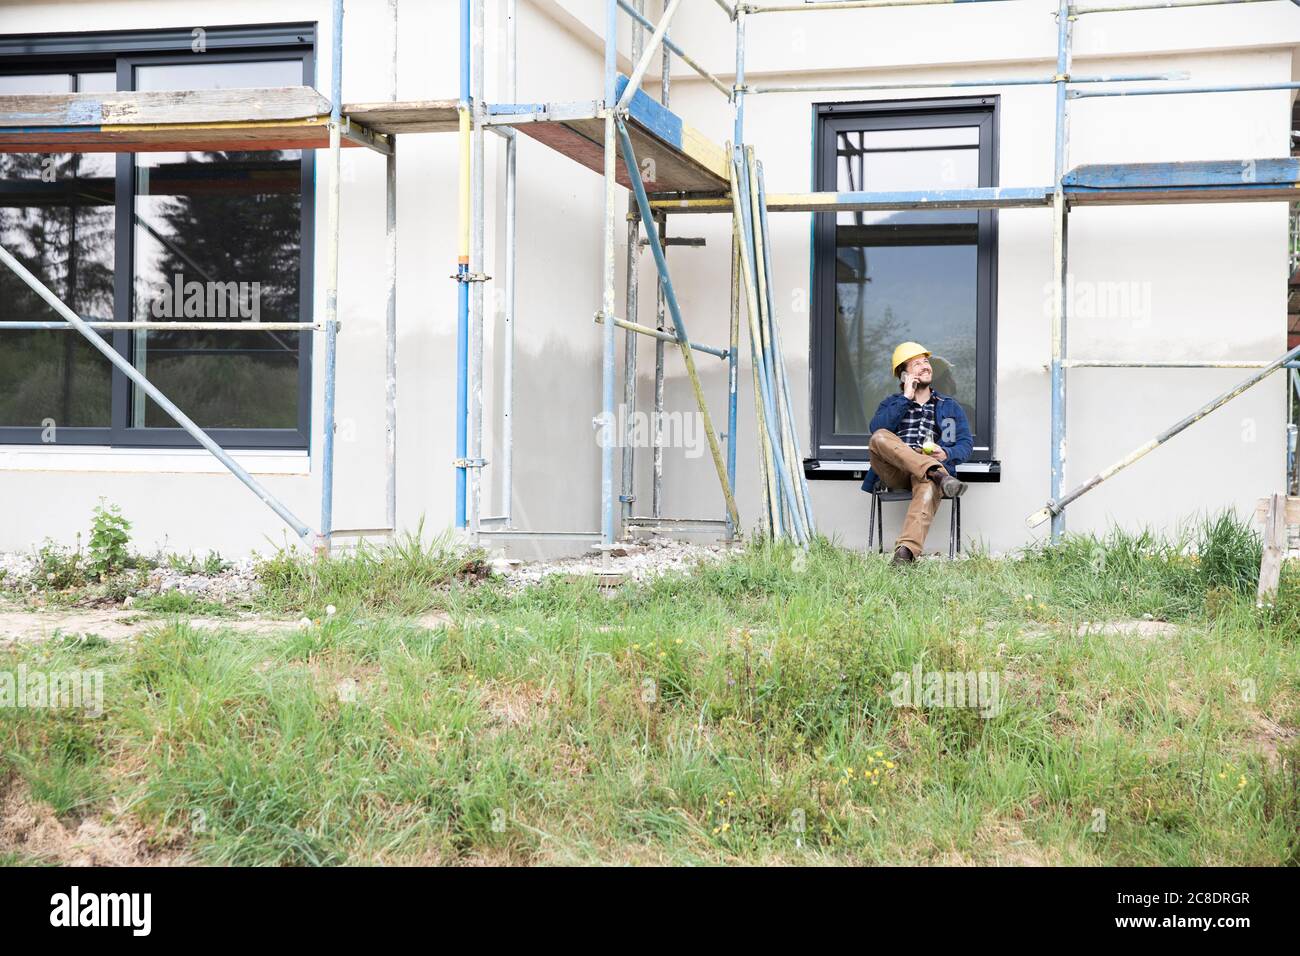 Travailleur de la construction qui parle par téléphone portable en étant assis contre la maison Banque D'Images